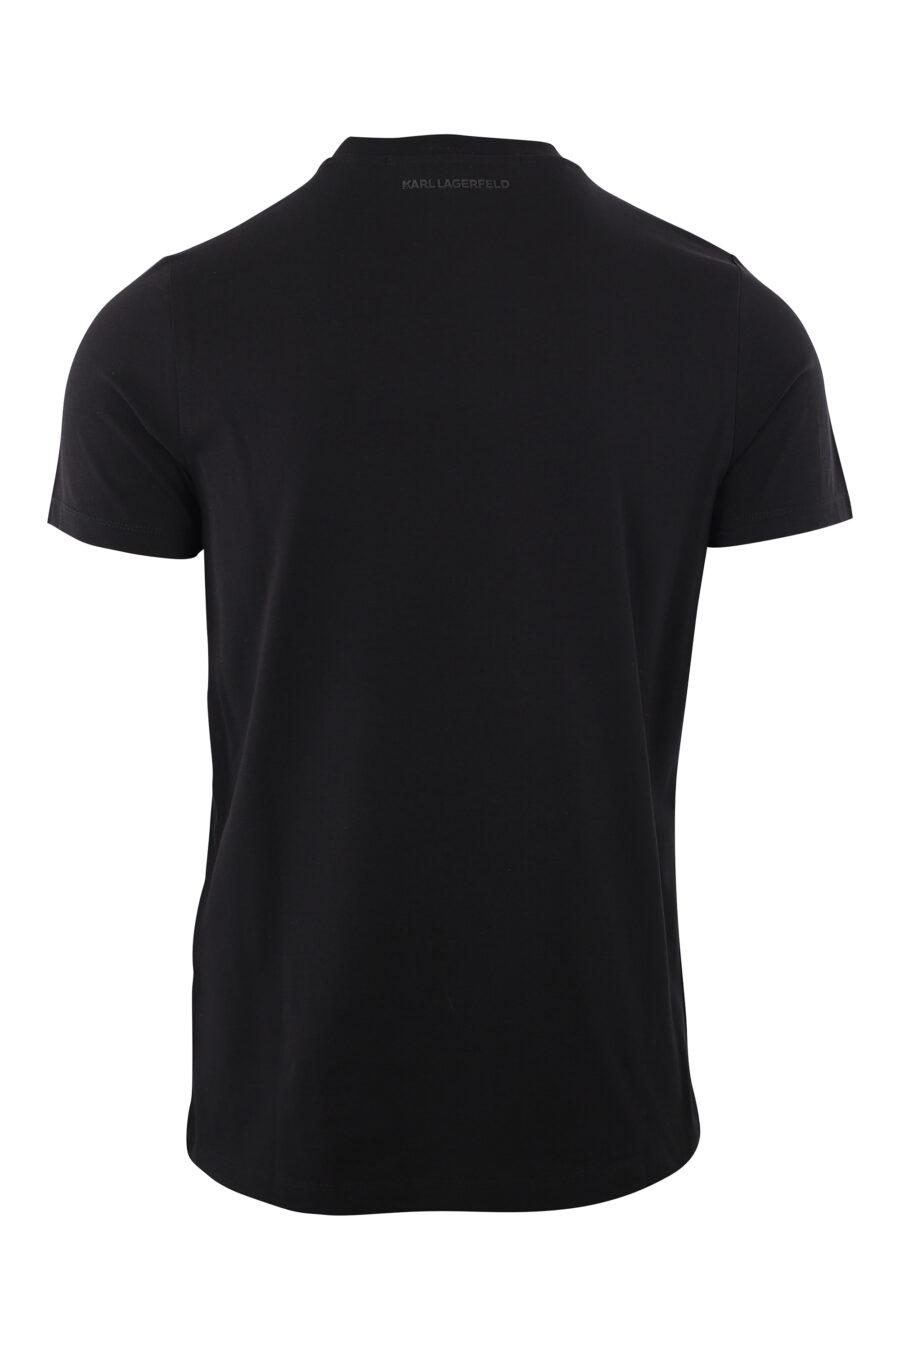 Schwarzes T-Shirt mit goldenem Gummilogo "rue st-guillaume" - IMG 2023